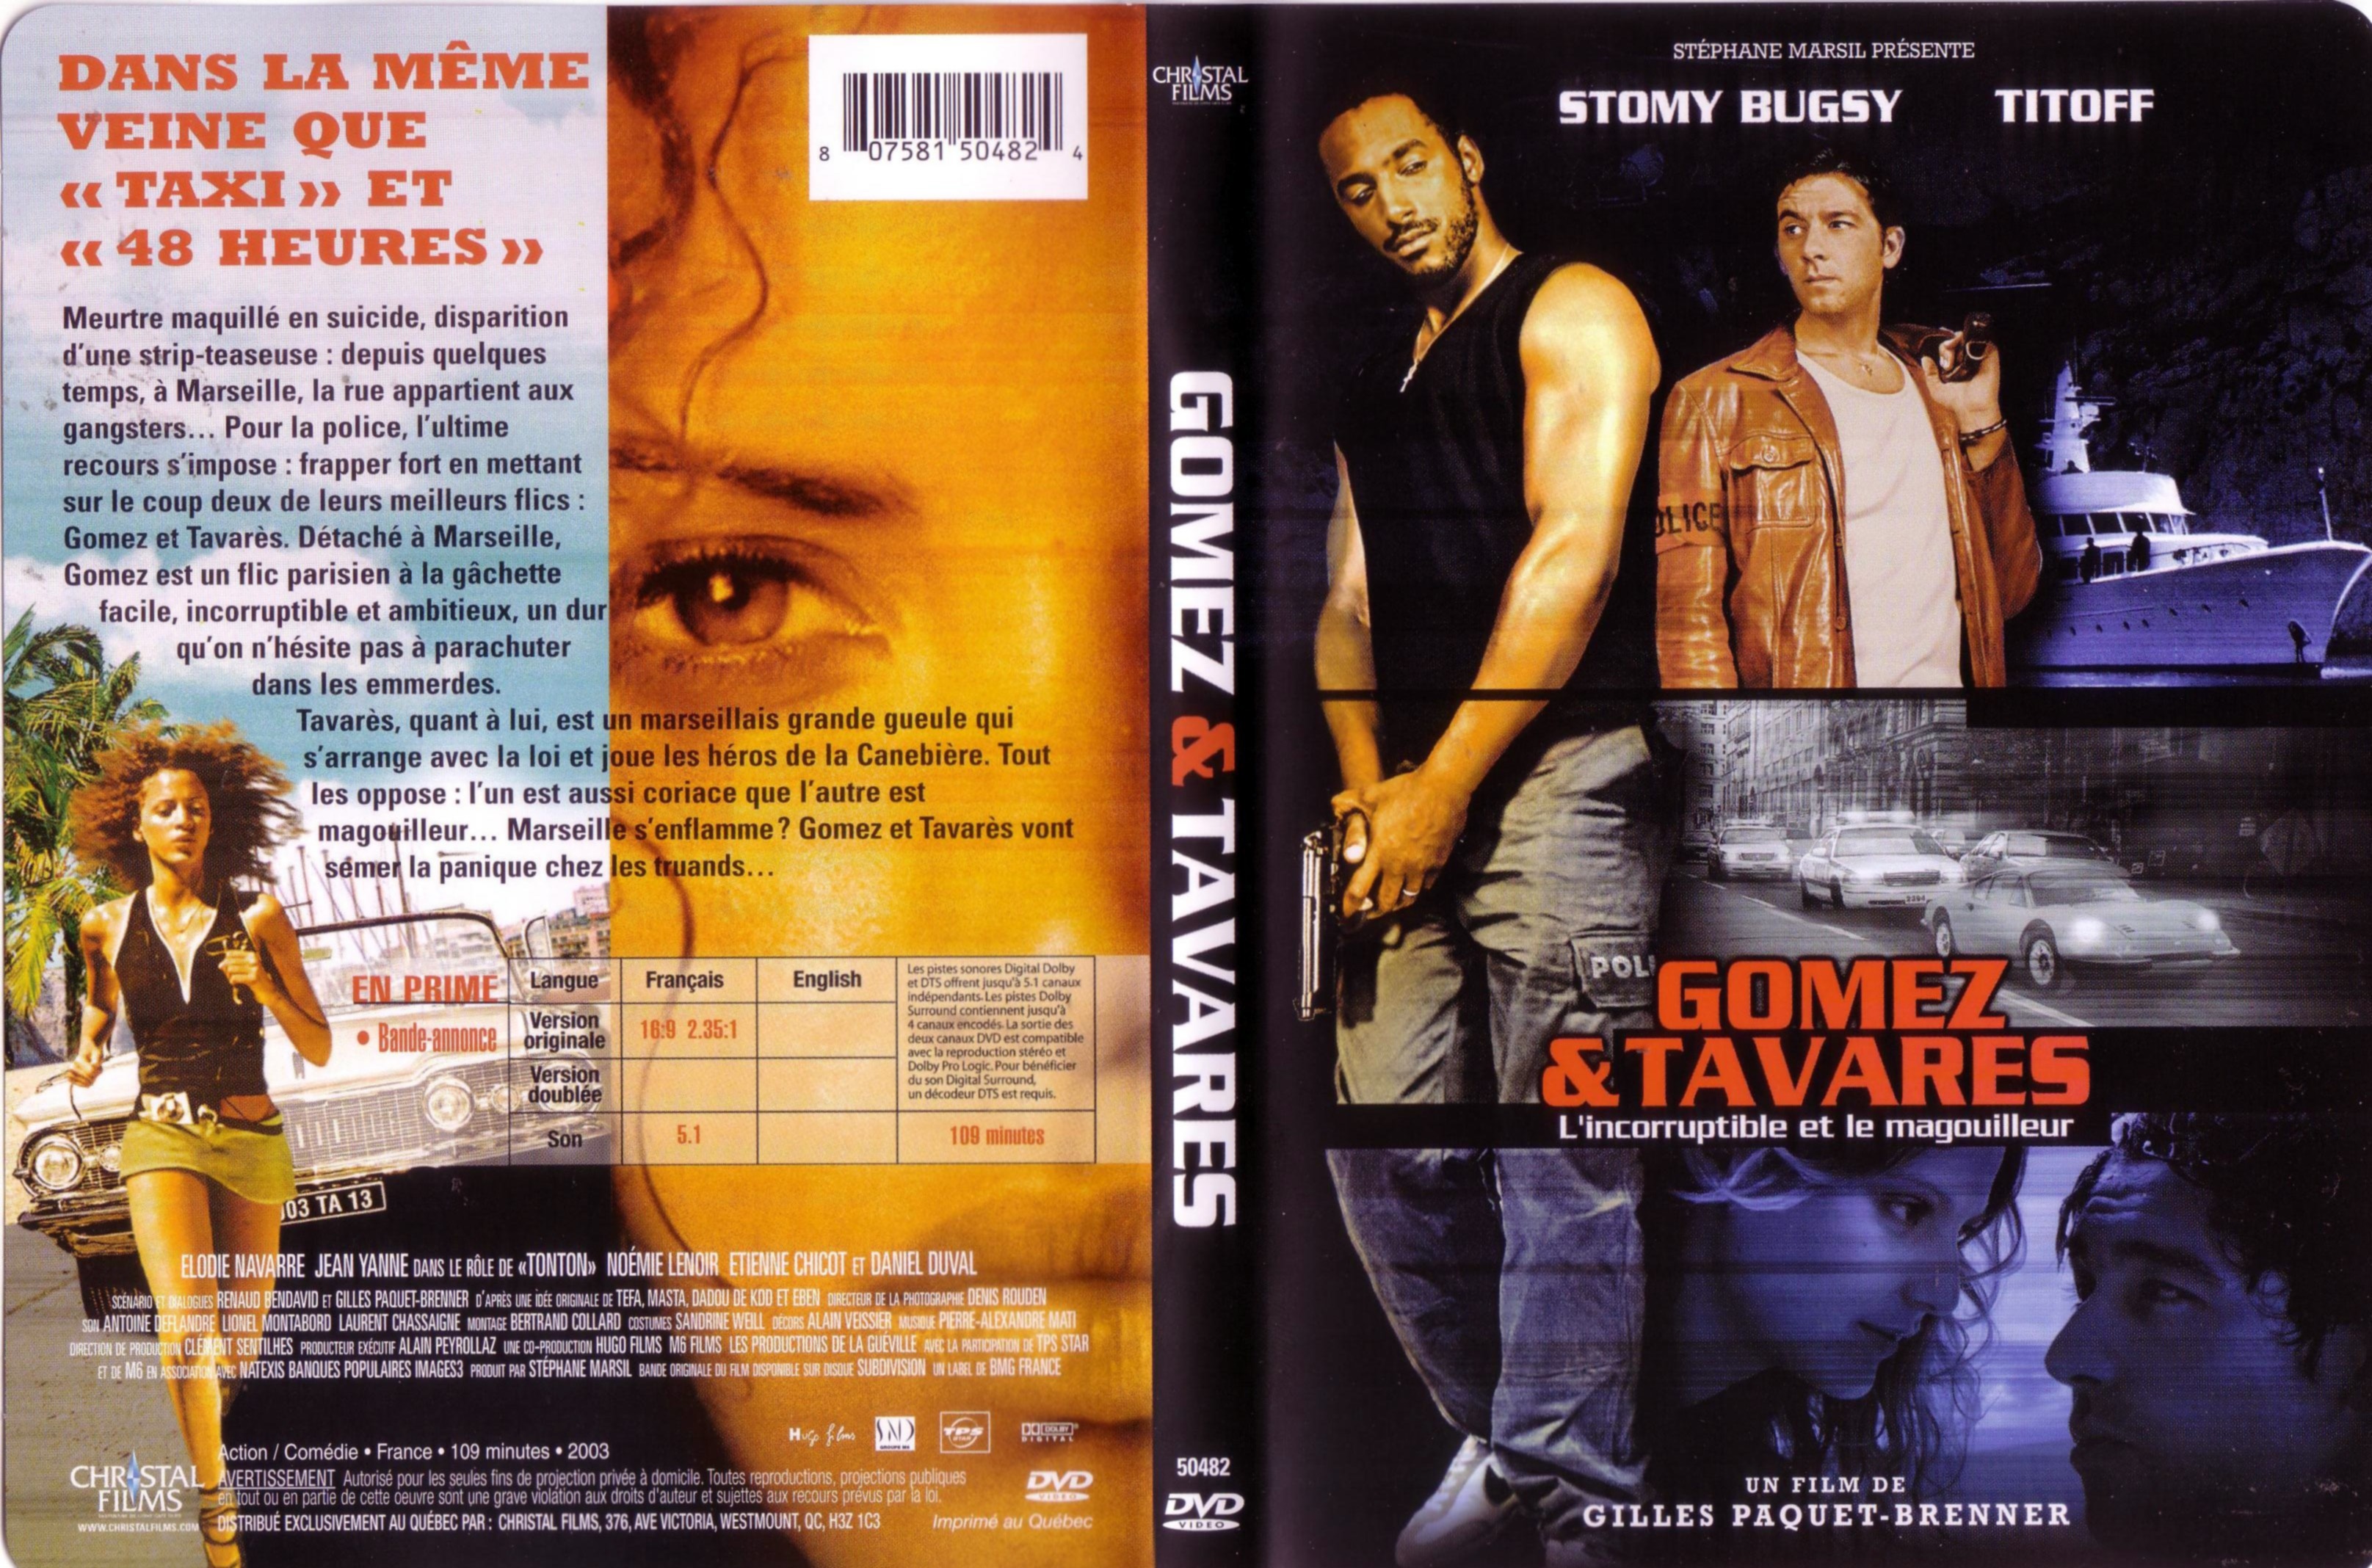 Jaquette DVD Gomez et Tavares v2